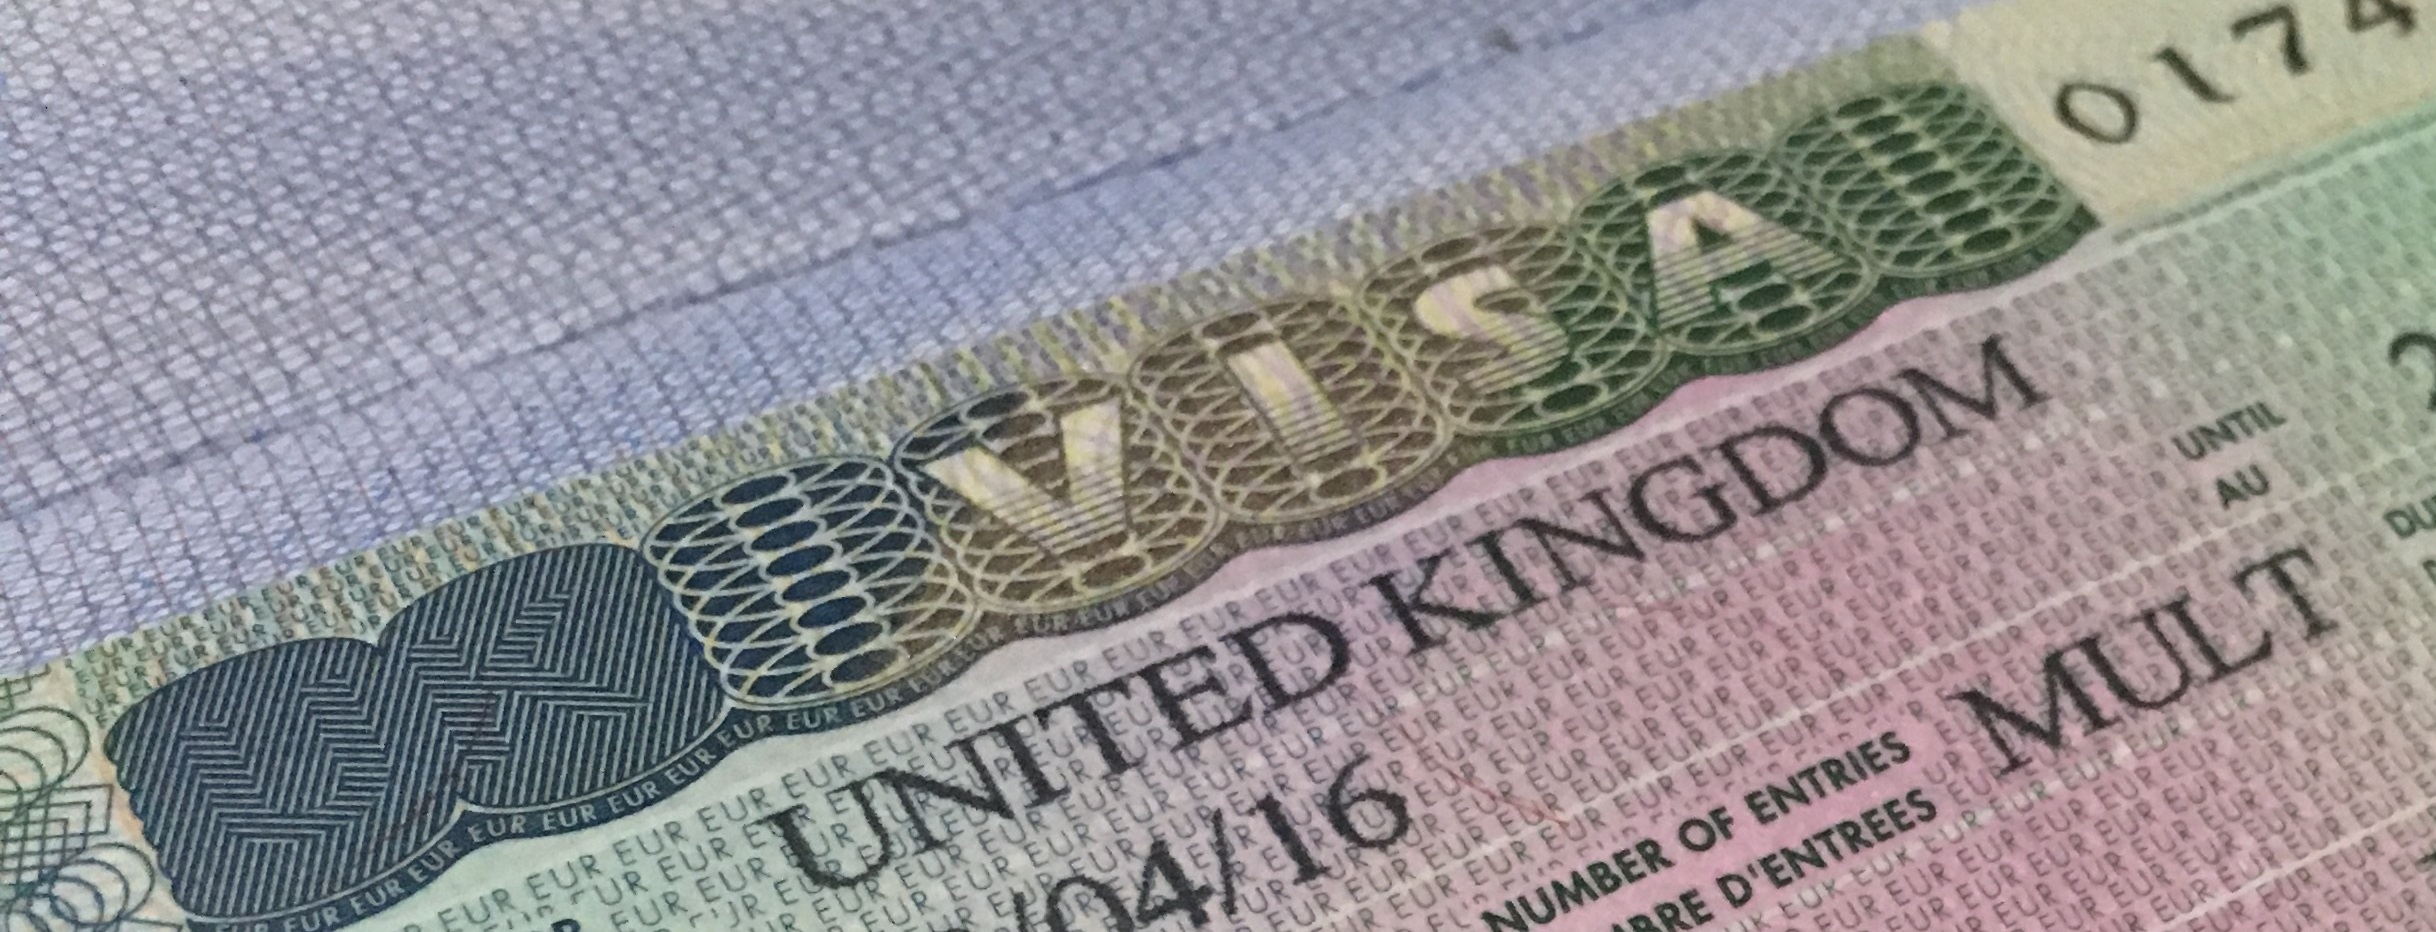 Applying for a UK Visa through Homes for Ukraine Scheme